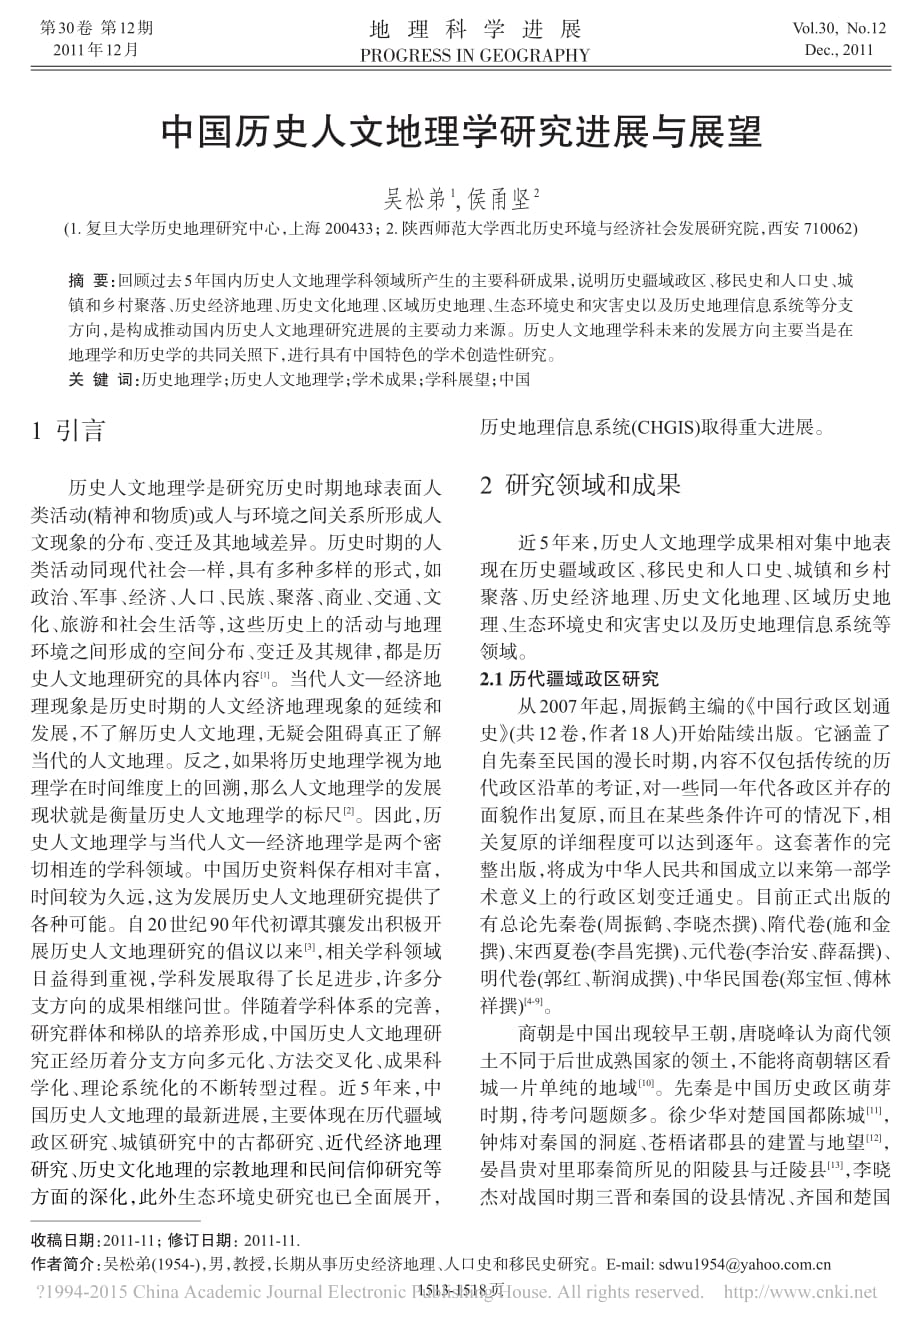 中国历史人文地理学研究进展与展望_吴松弟_第1页